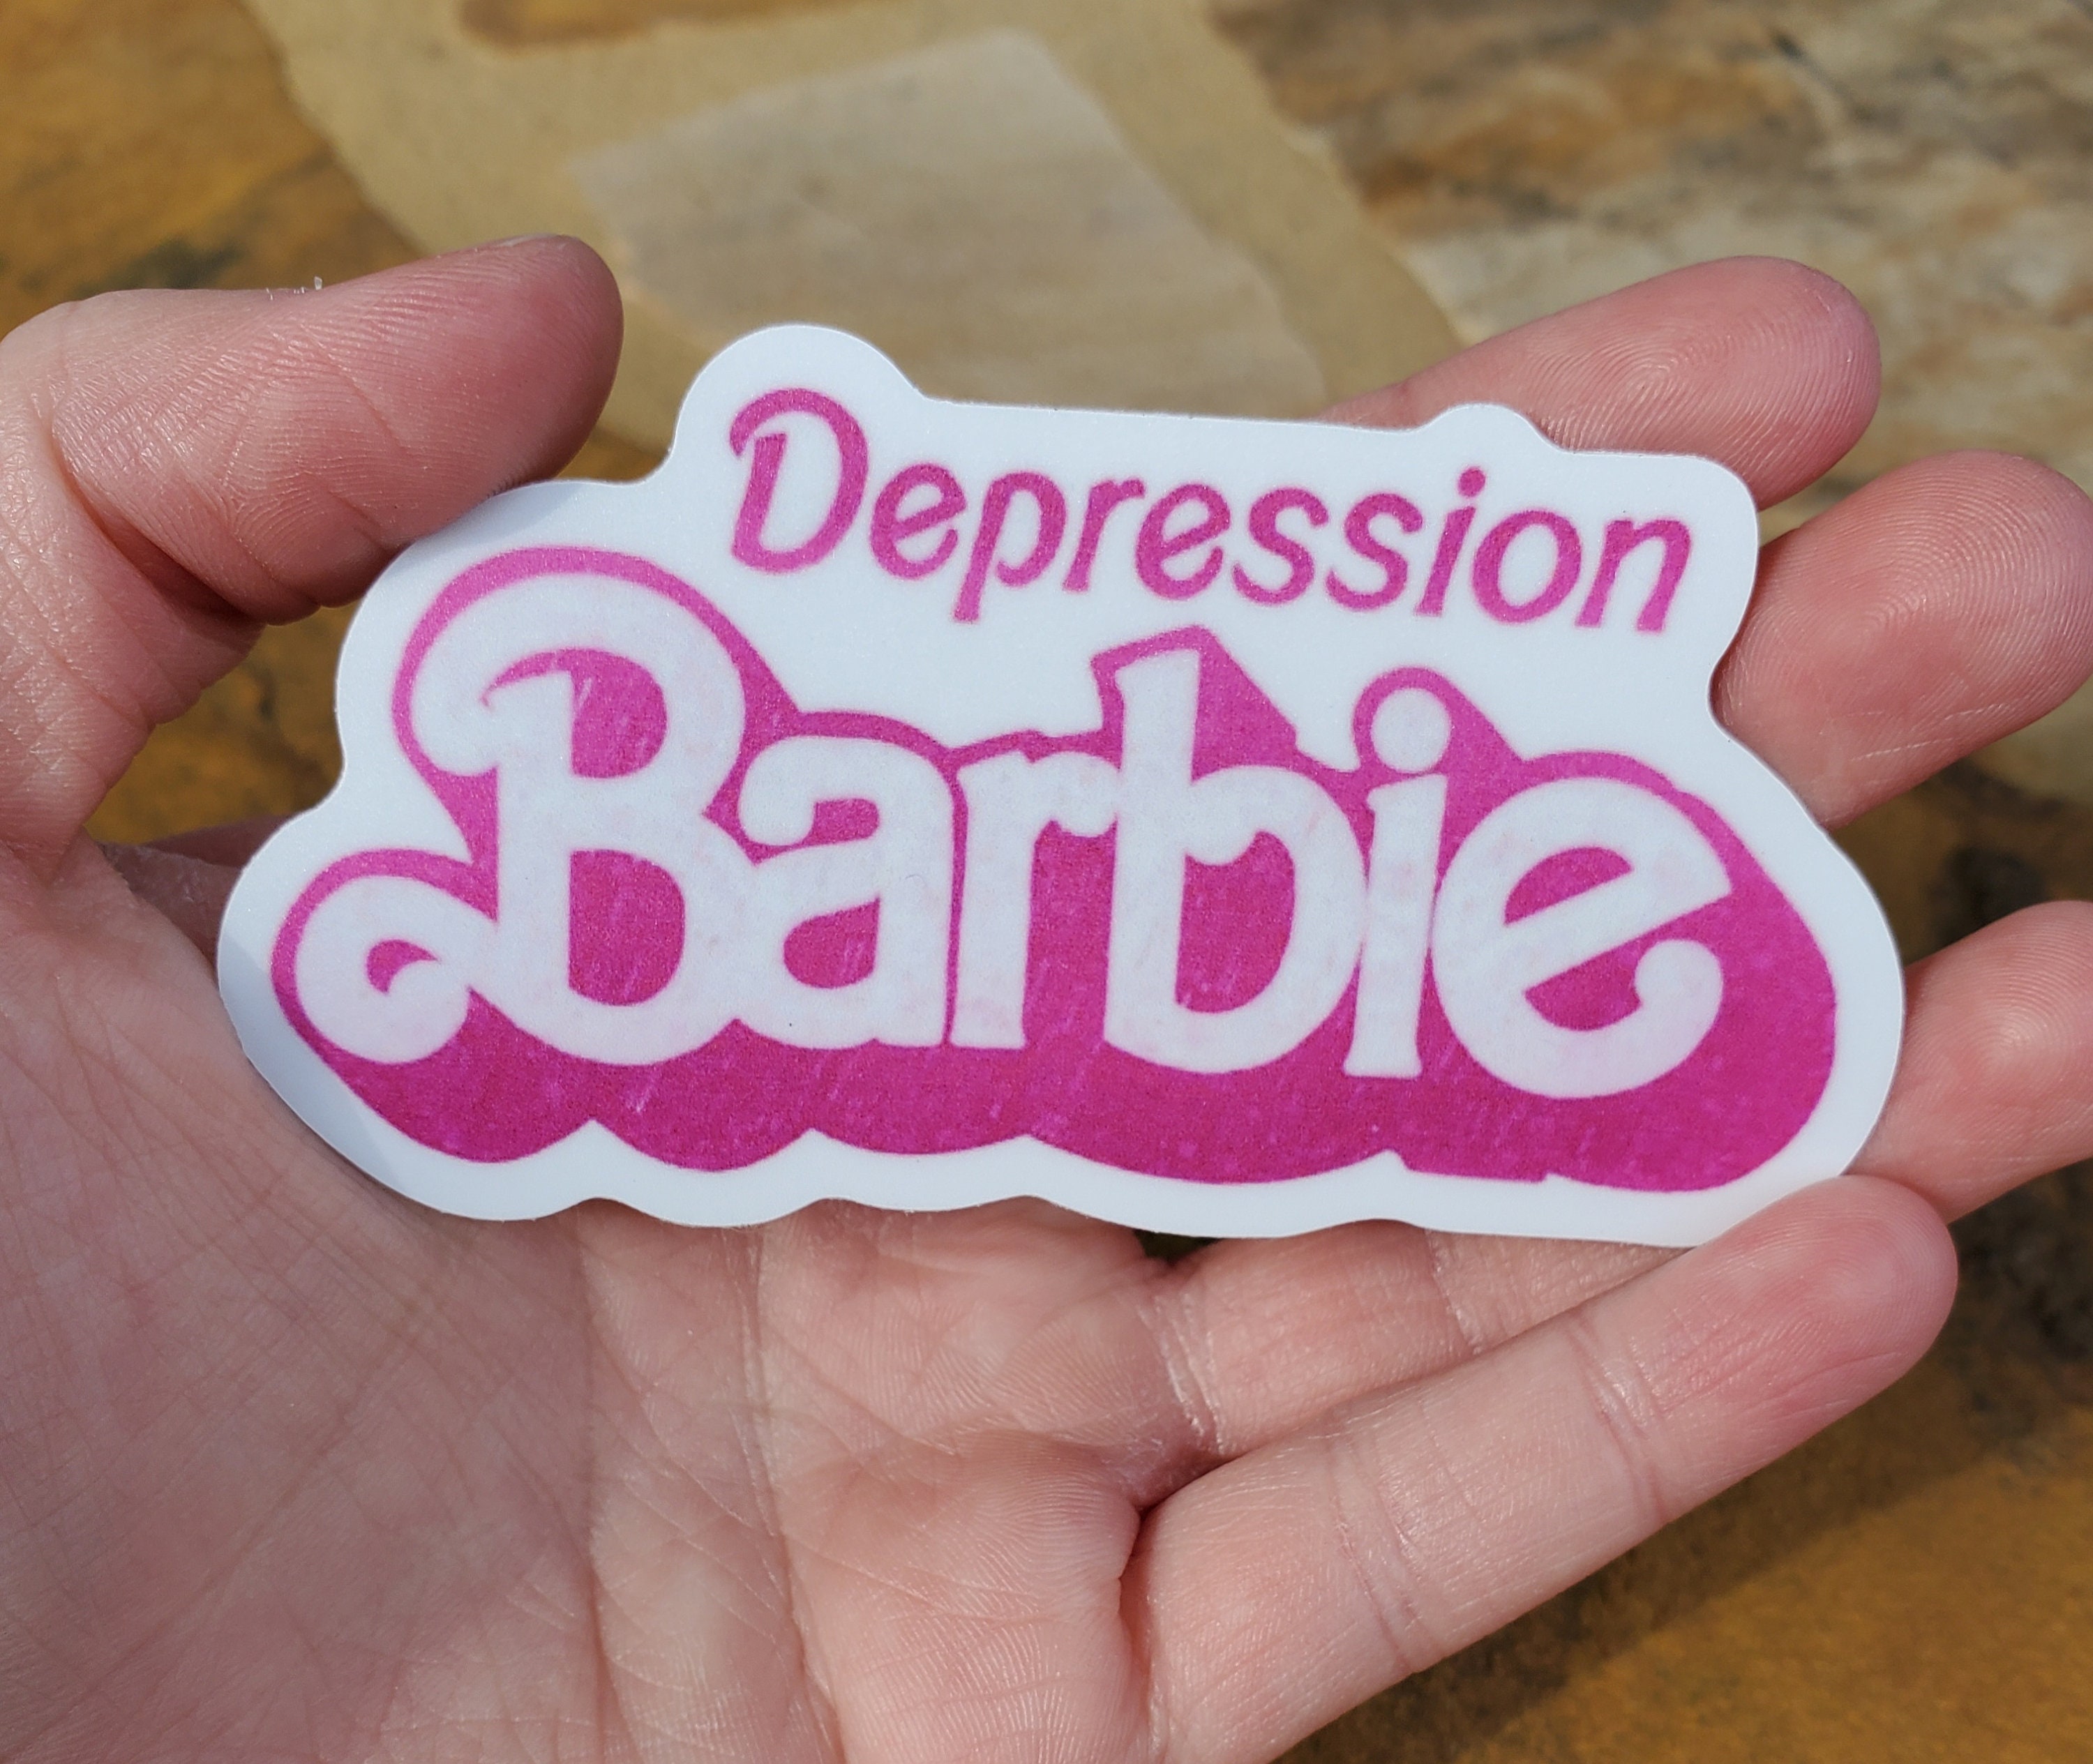 Barbie Heart Vinyl Textured Sticker - Pumpkin and Bean